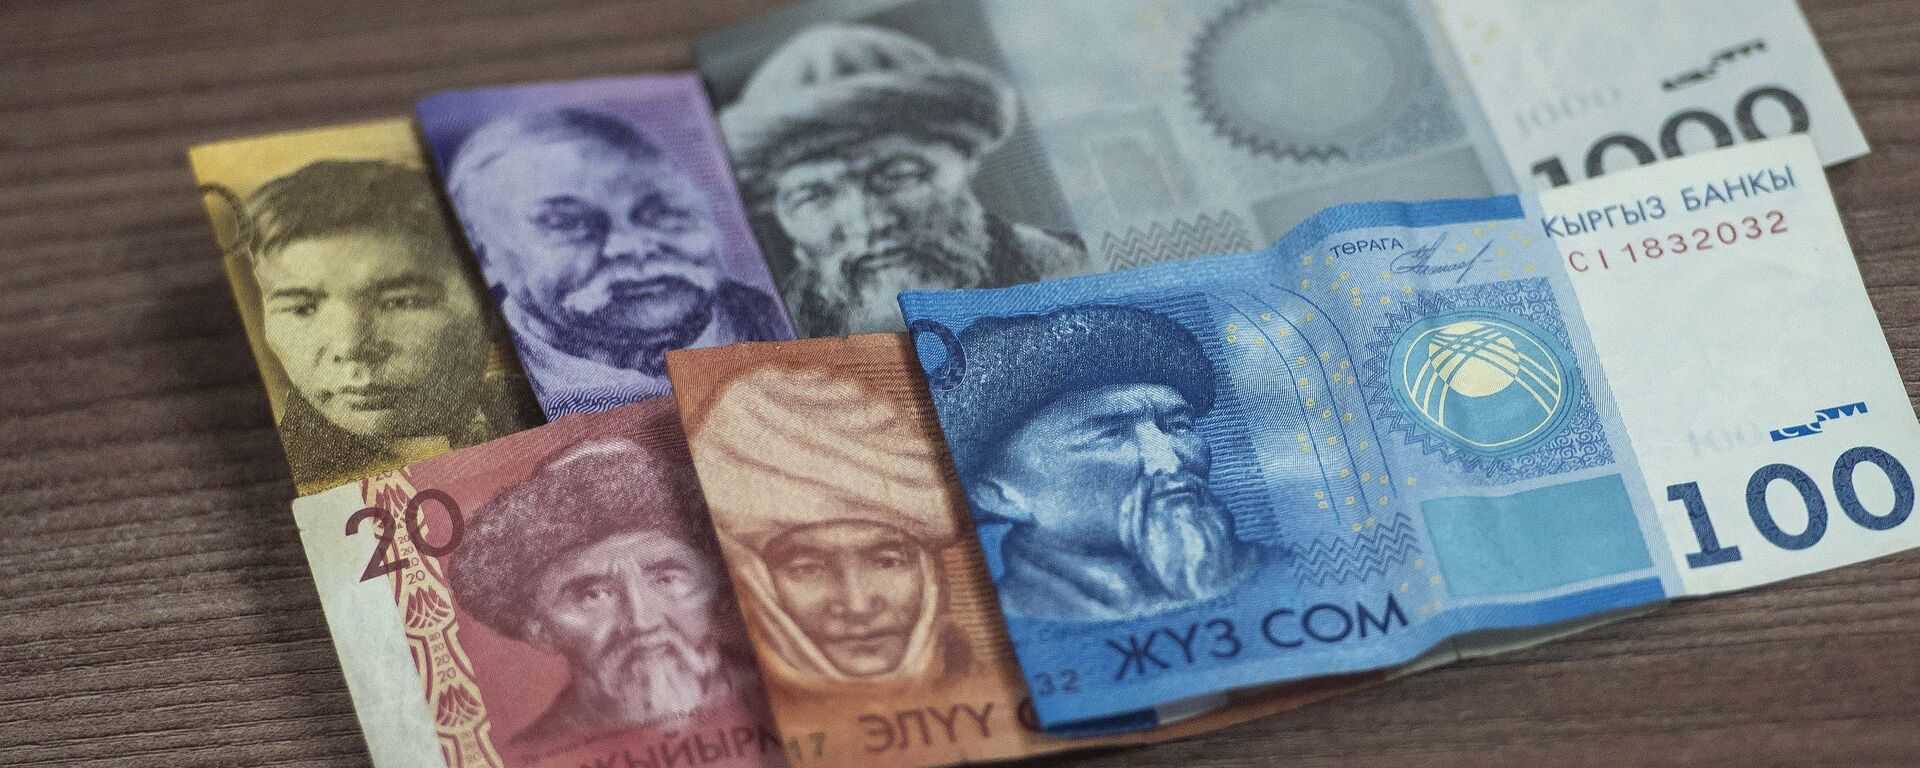 Денежные купюры. Архивное фото - Sputnik Кыргызстан, 1920, 29.07.2021